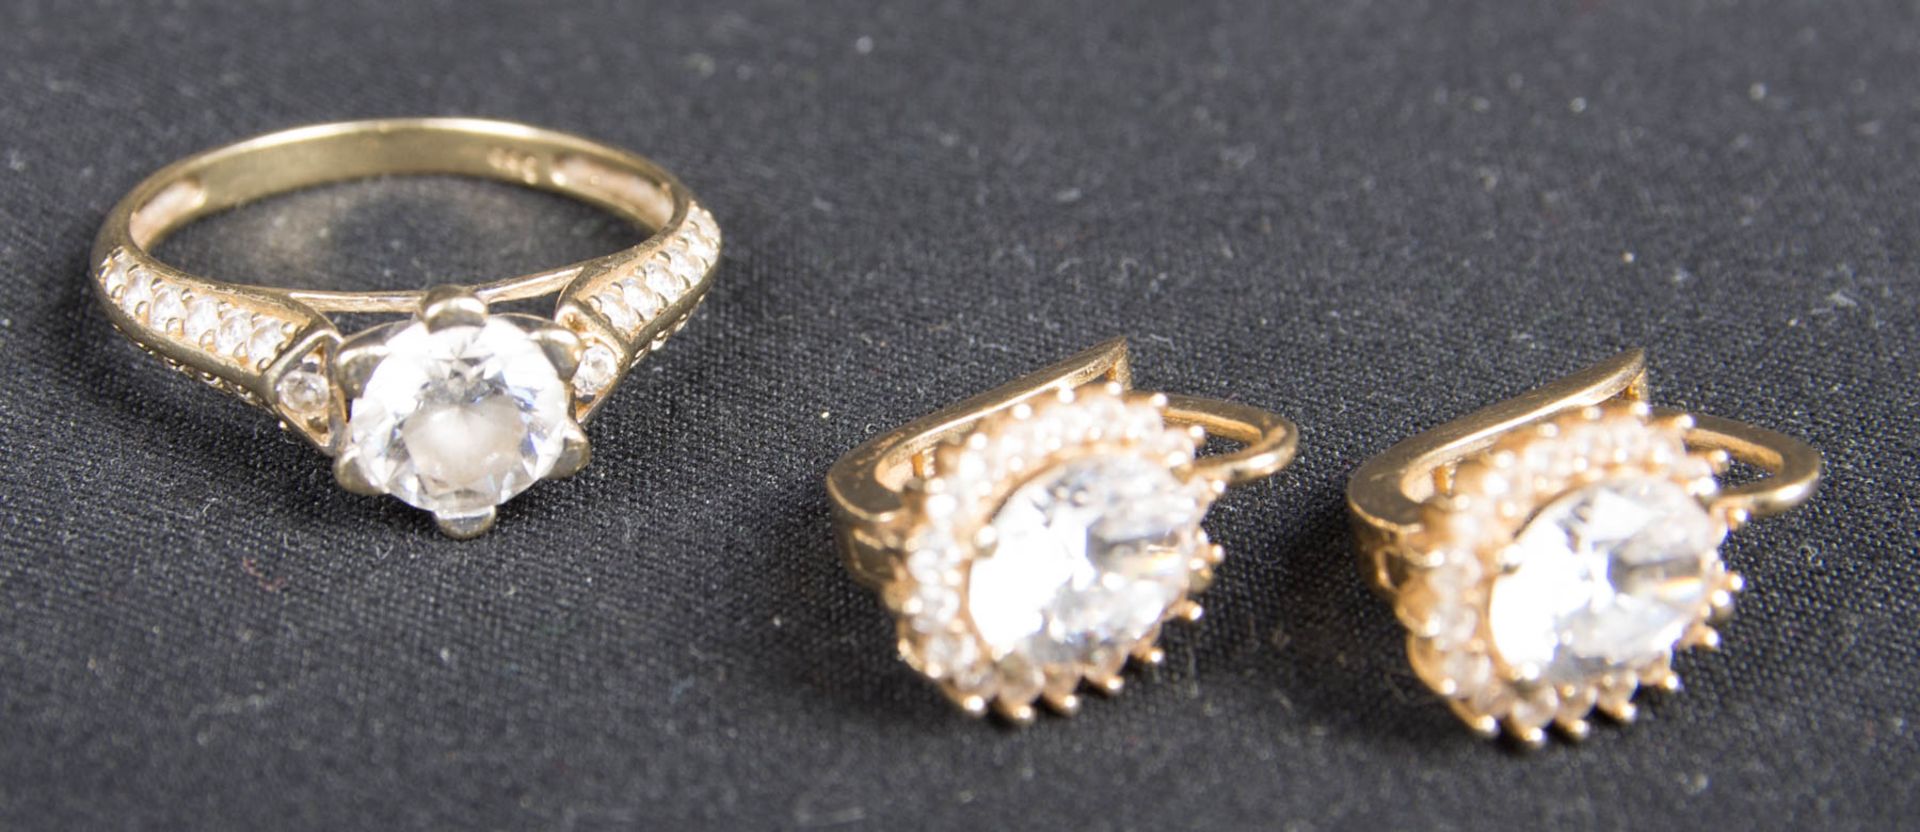 Zarter Ring und Ohrringe mit weißen Farbedelsteinen, 585er Gelbgold.